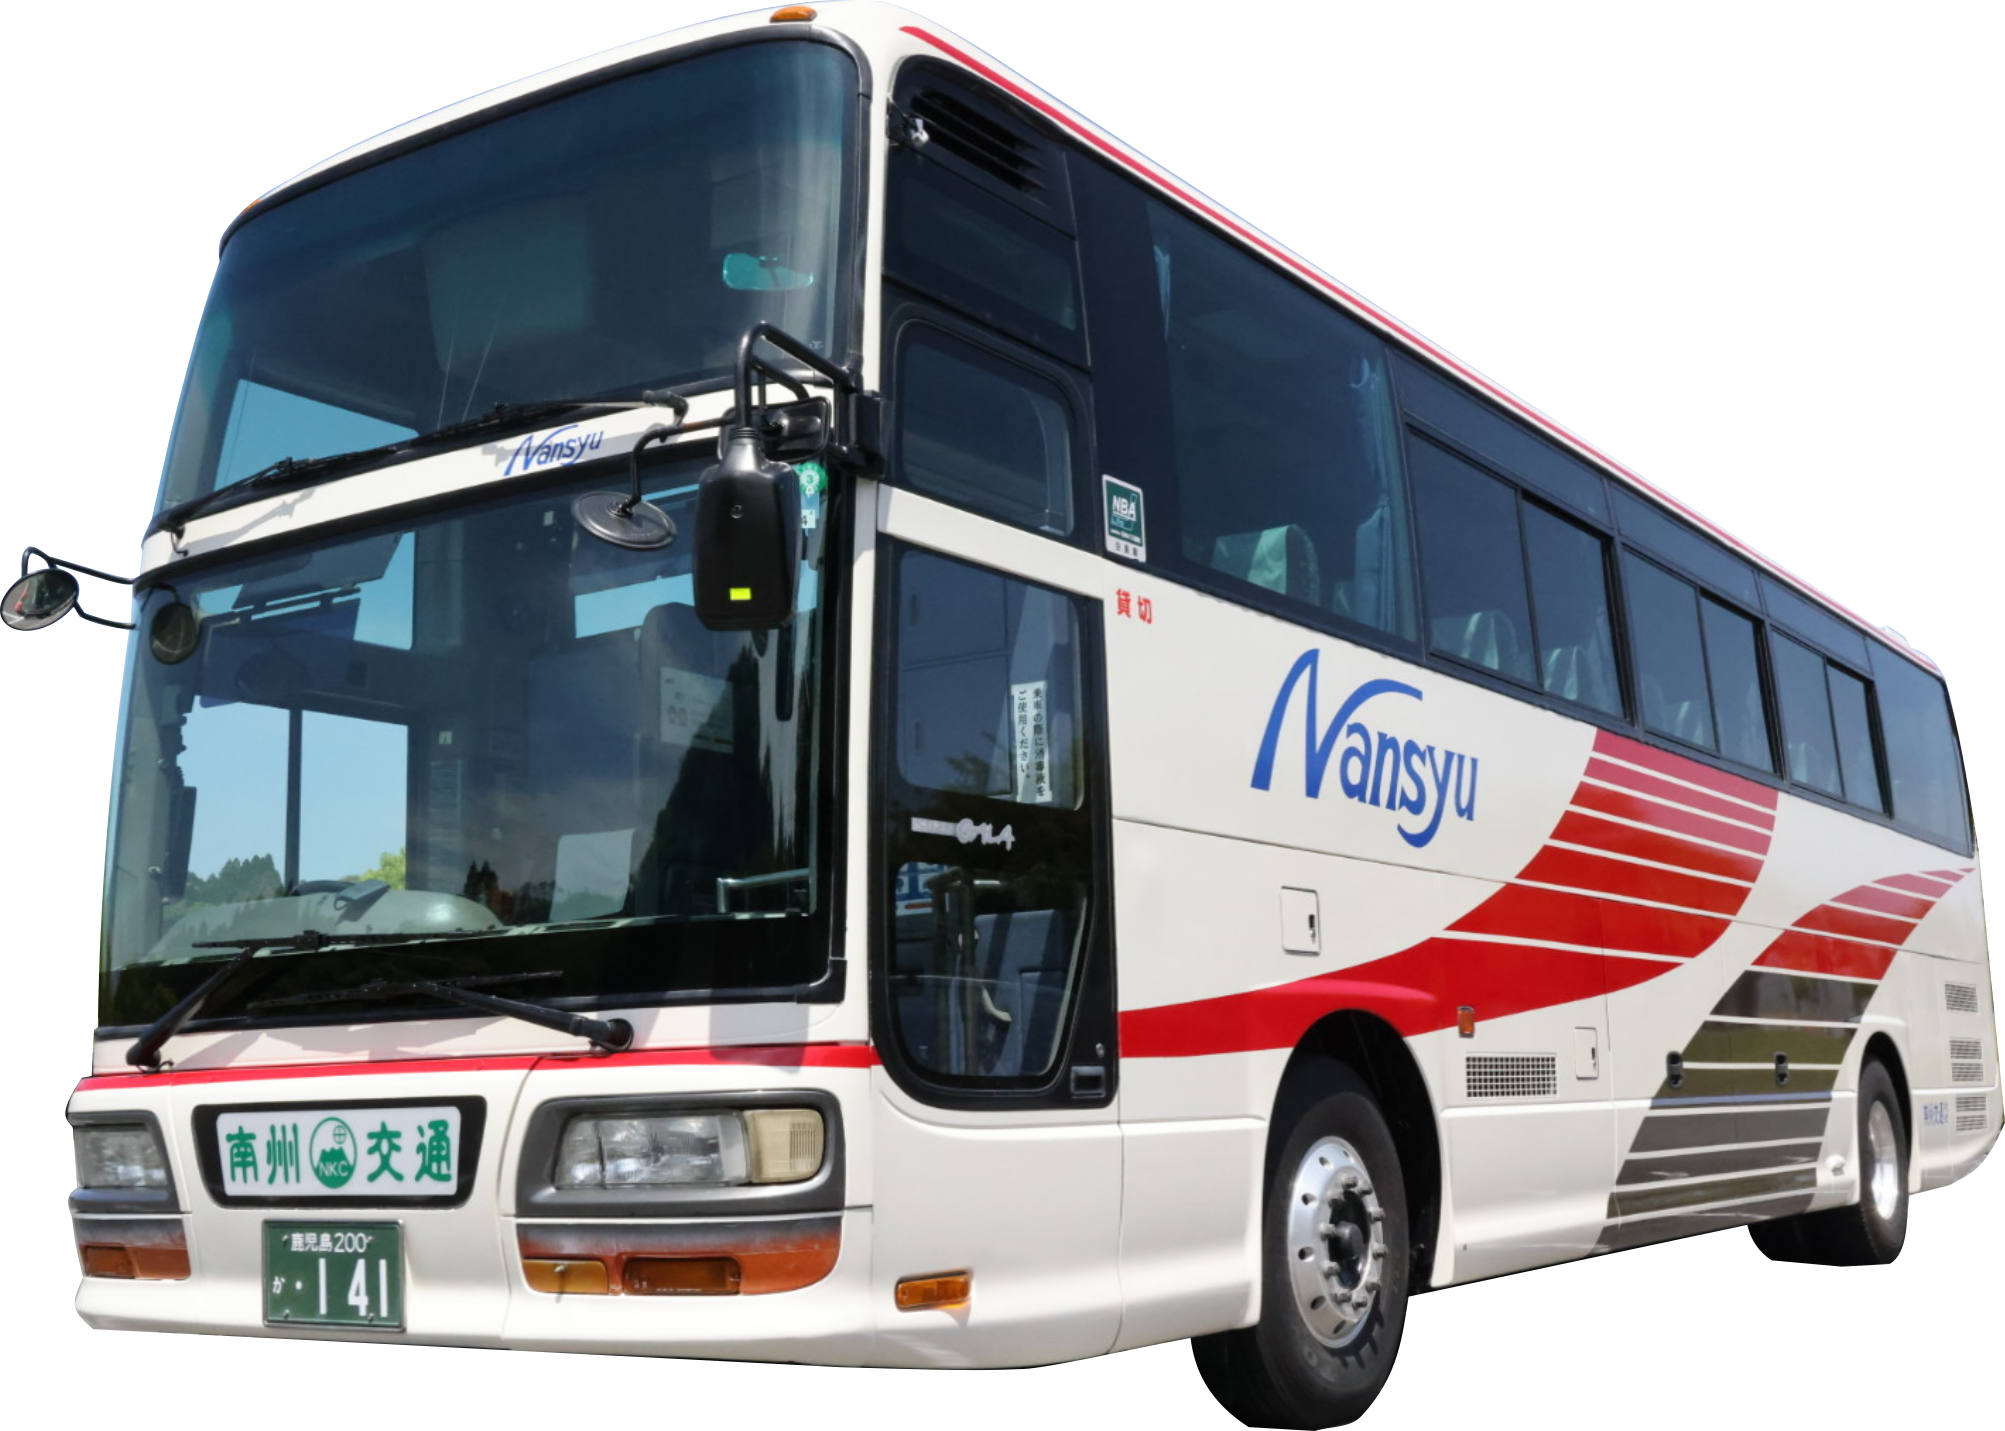 5年保証』 佐賀県大型通学バス 着座定員54名最大65名まで補助席追加可能@車選びドットコム